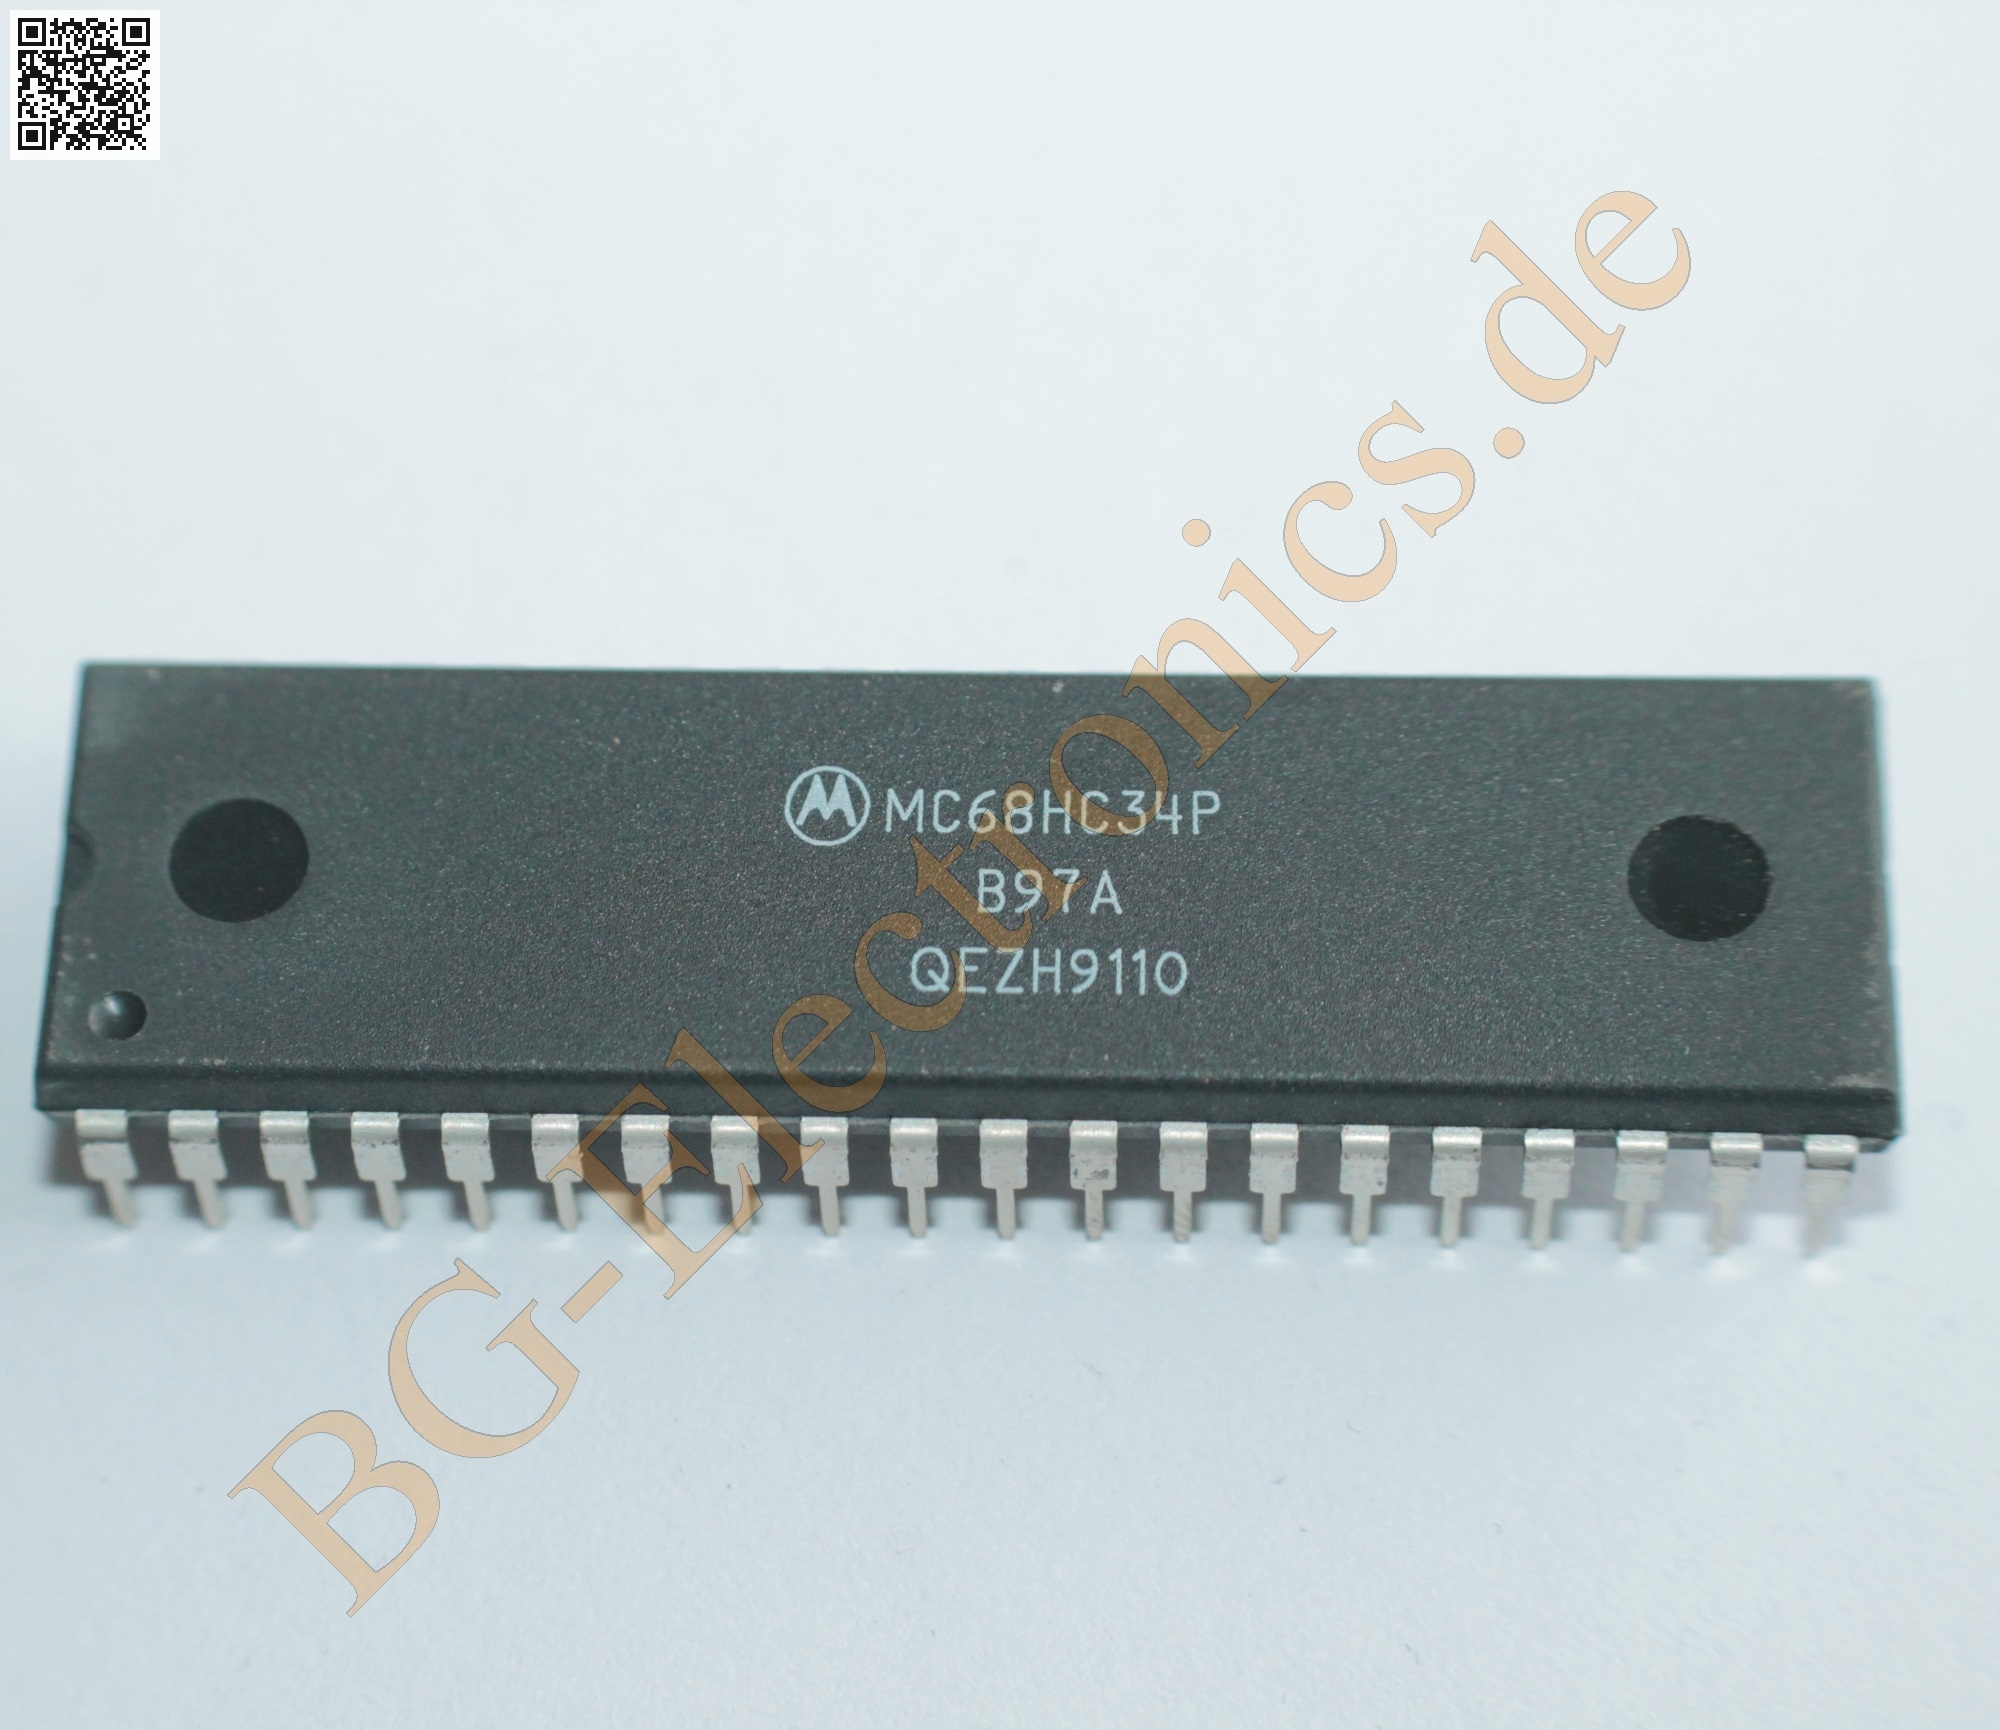 MC68HC34P